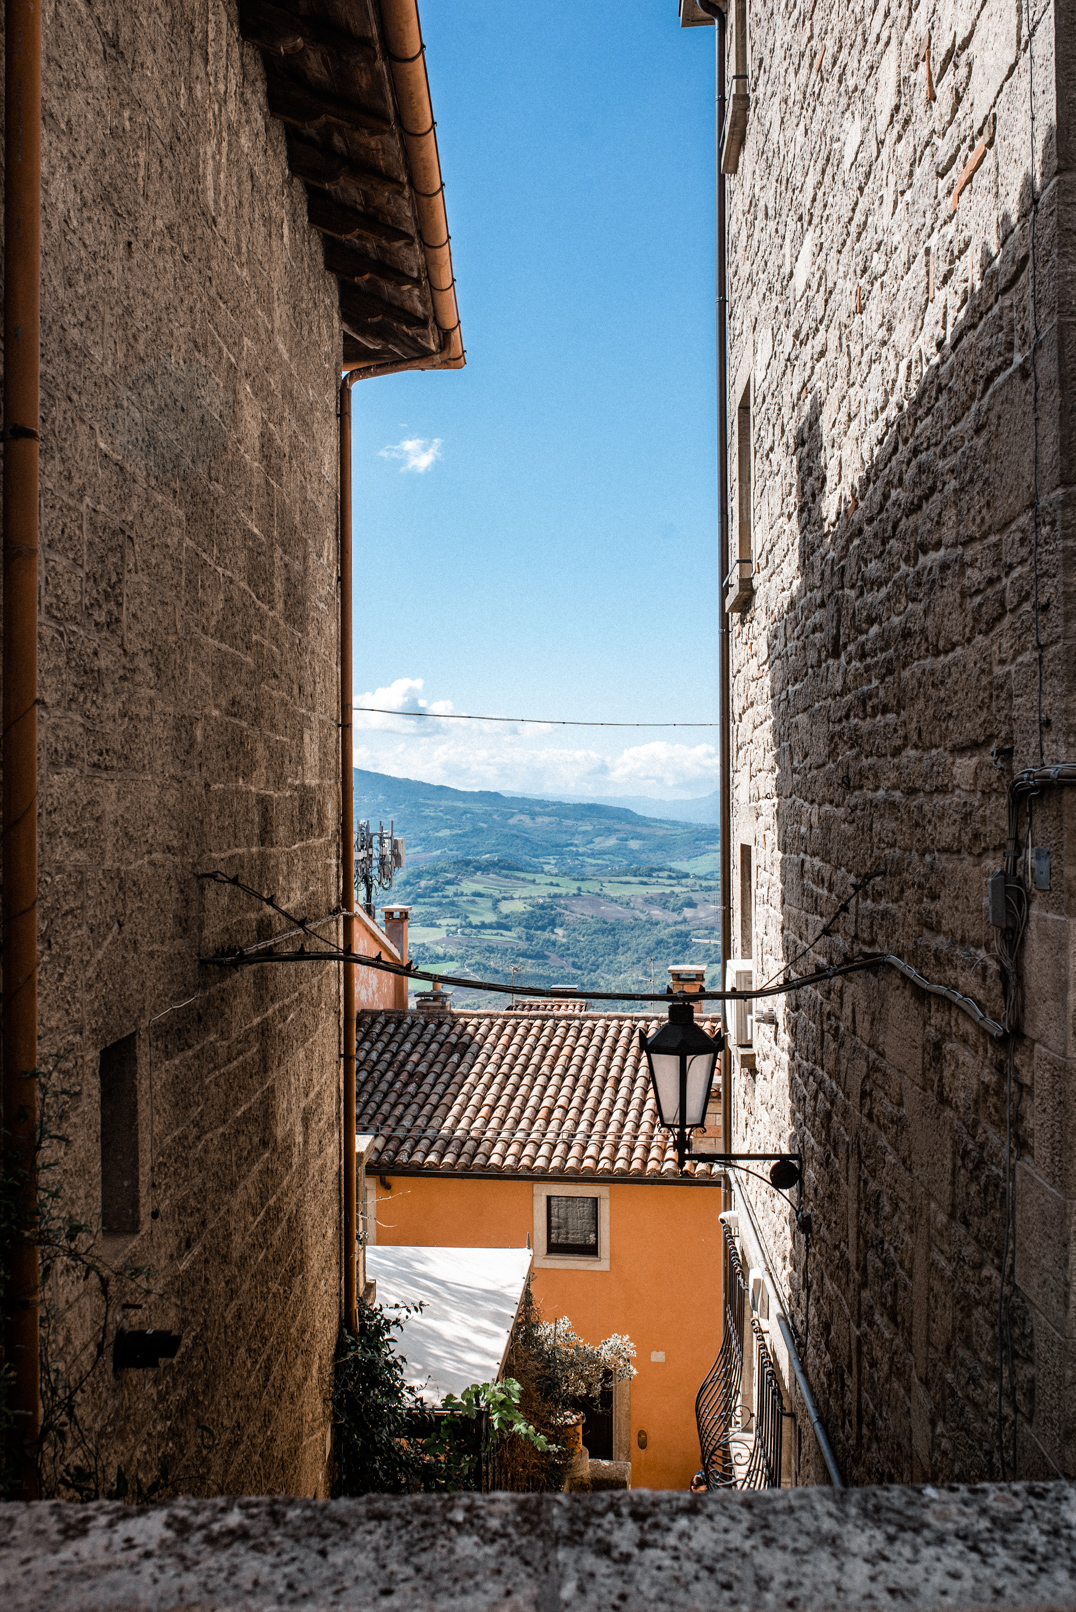 Travel around Europe - ~San Marino